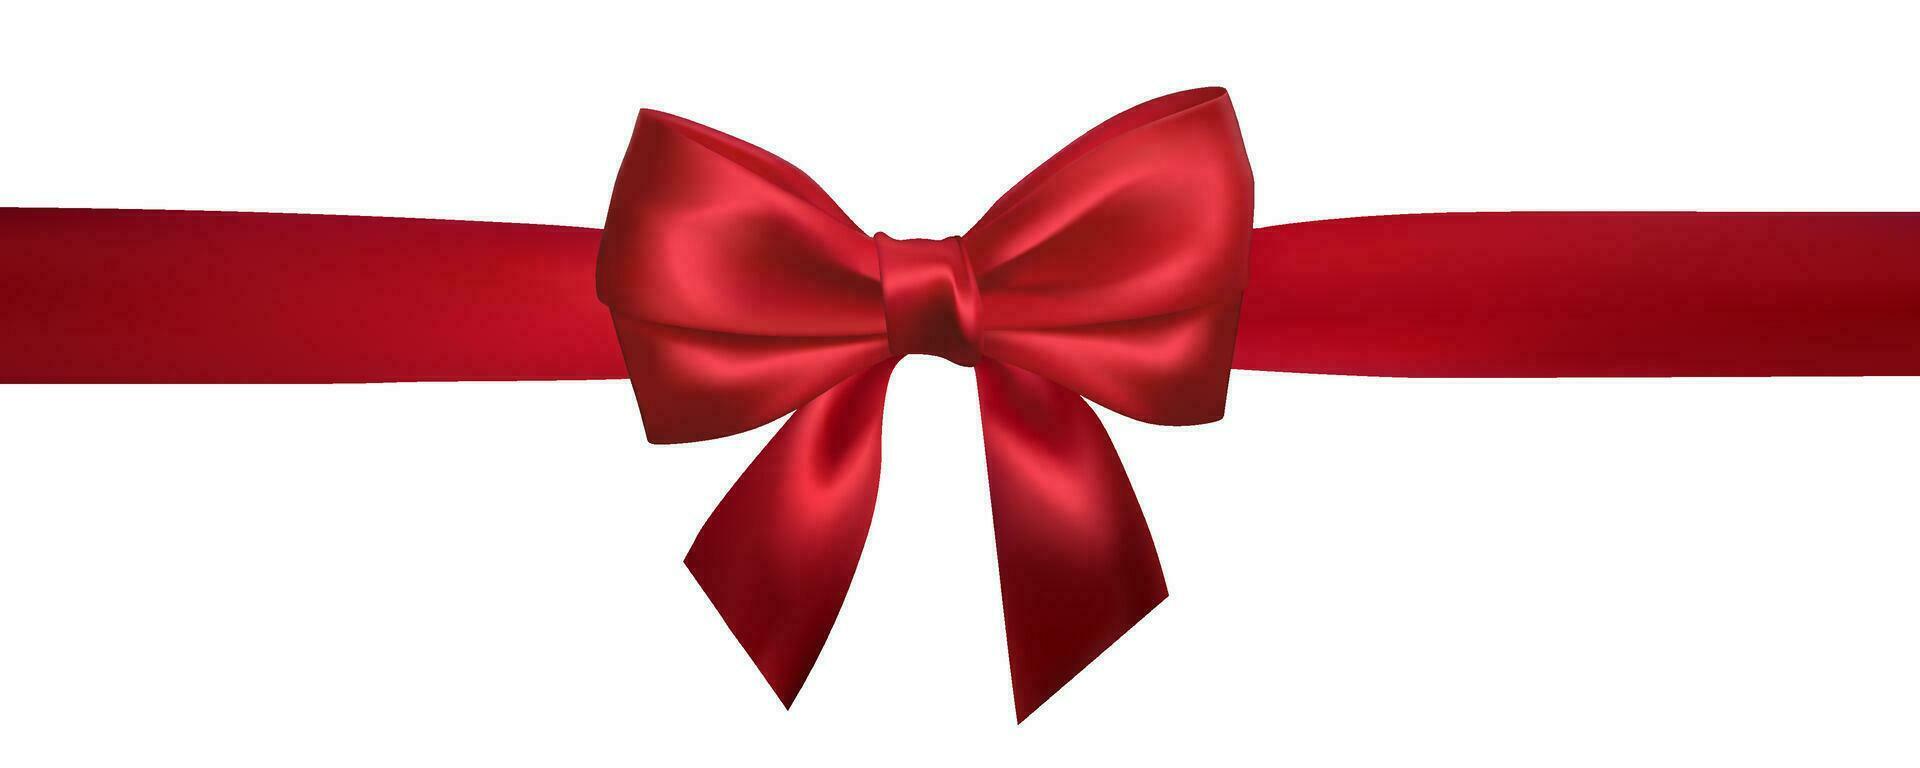 realistico rosso arco con orizzontale rosso nastri isolato su bianca. elemento per decorazione i regali, saluti, vacanze. vettore illustrazione